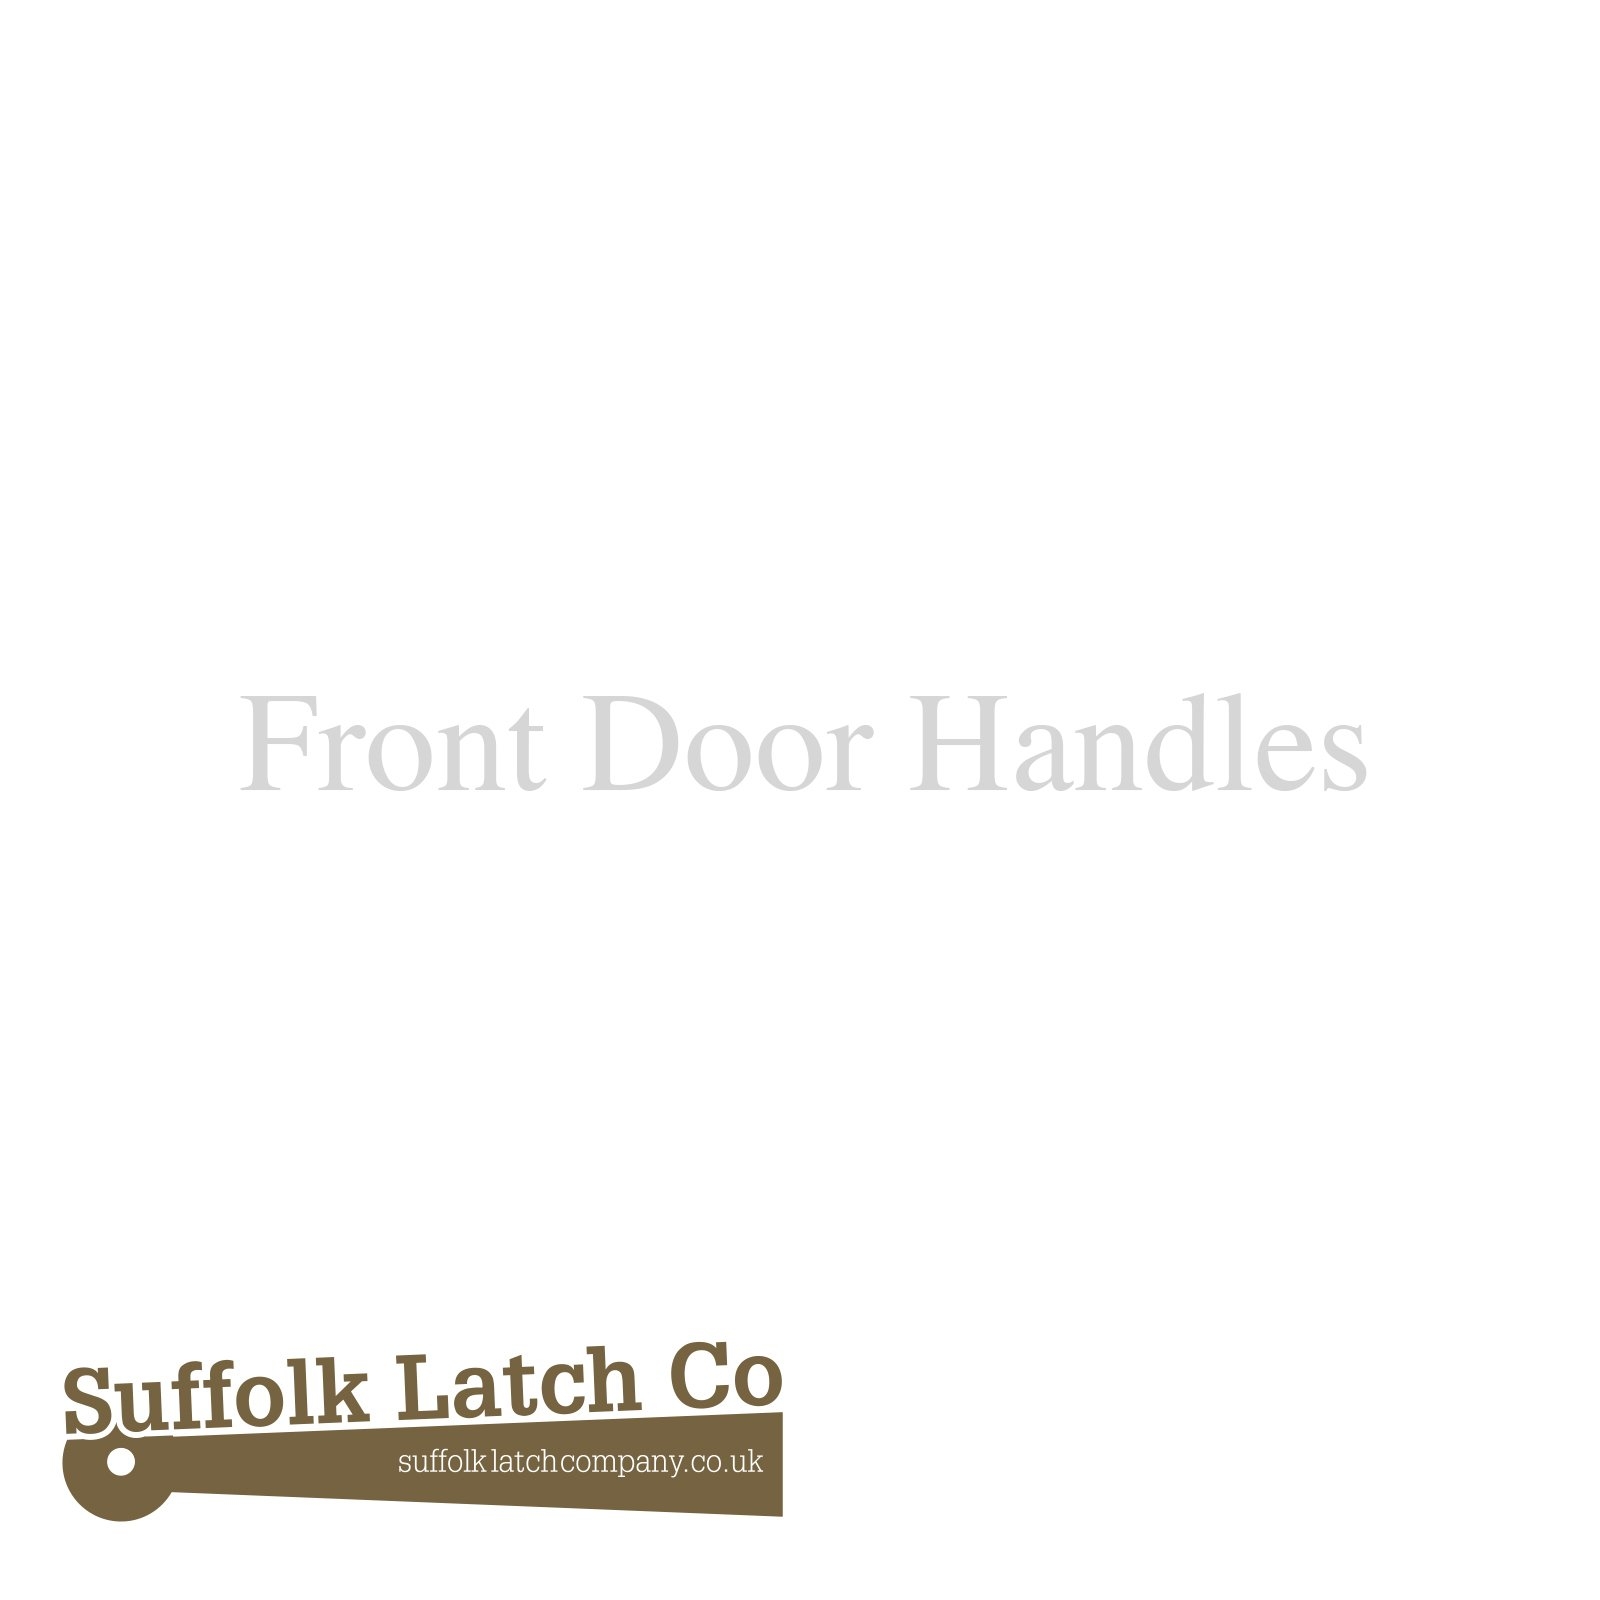 Front door handles